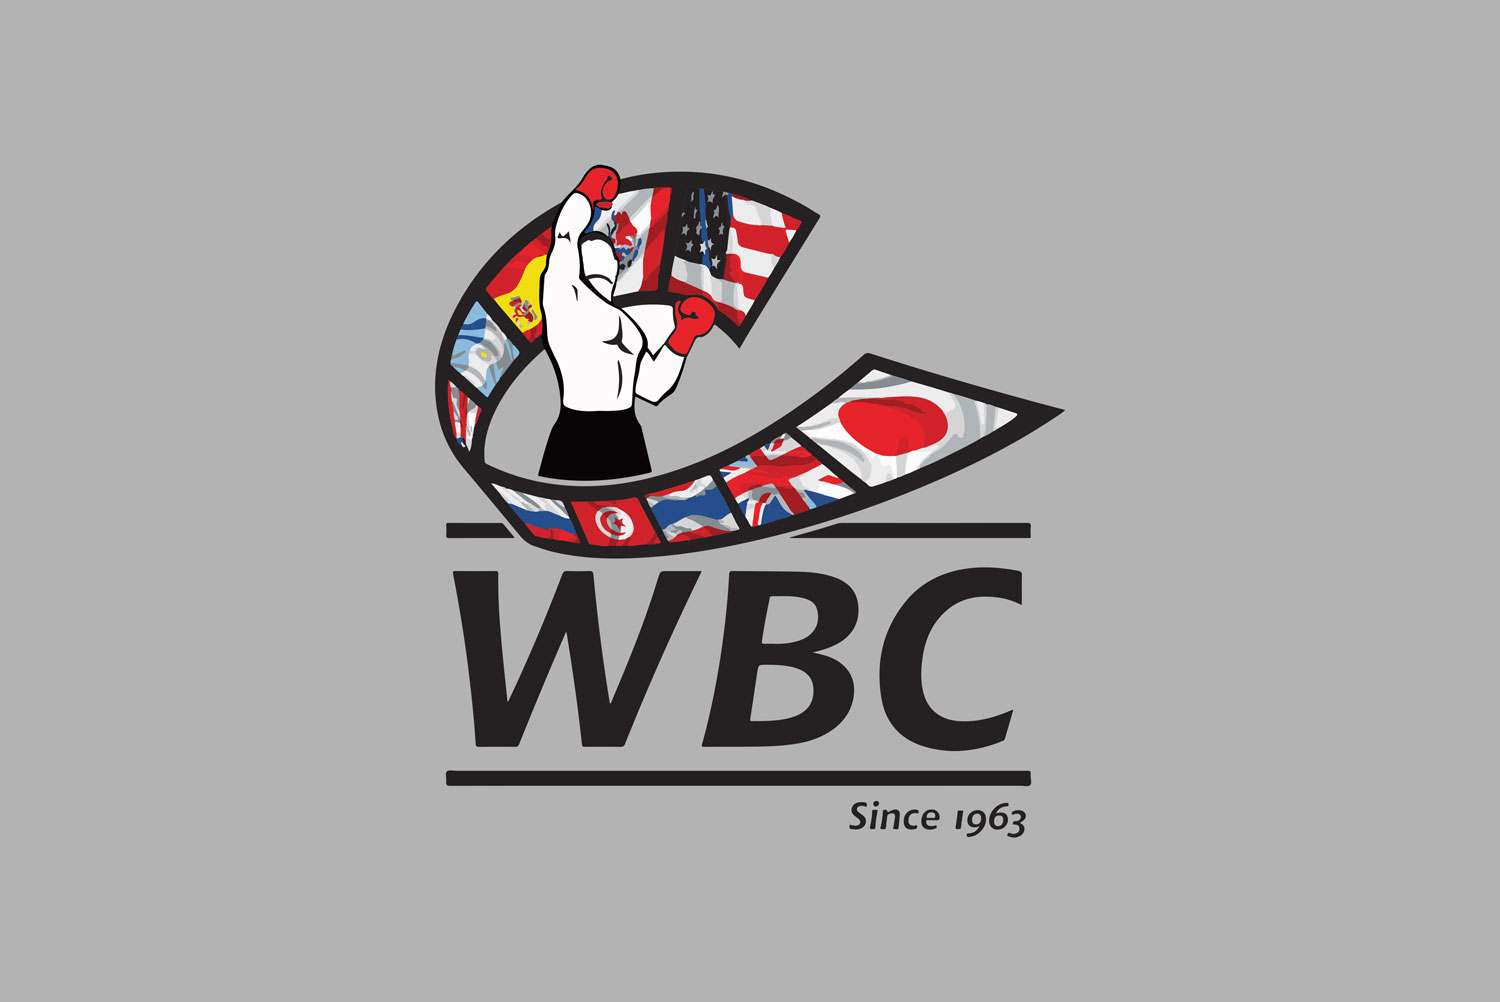 WBC boxing